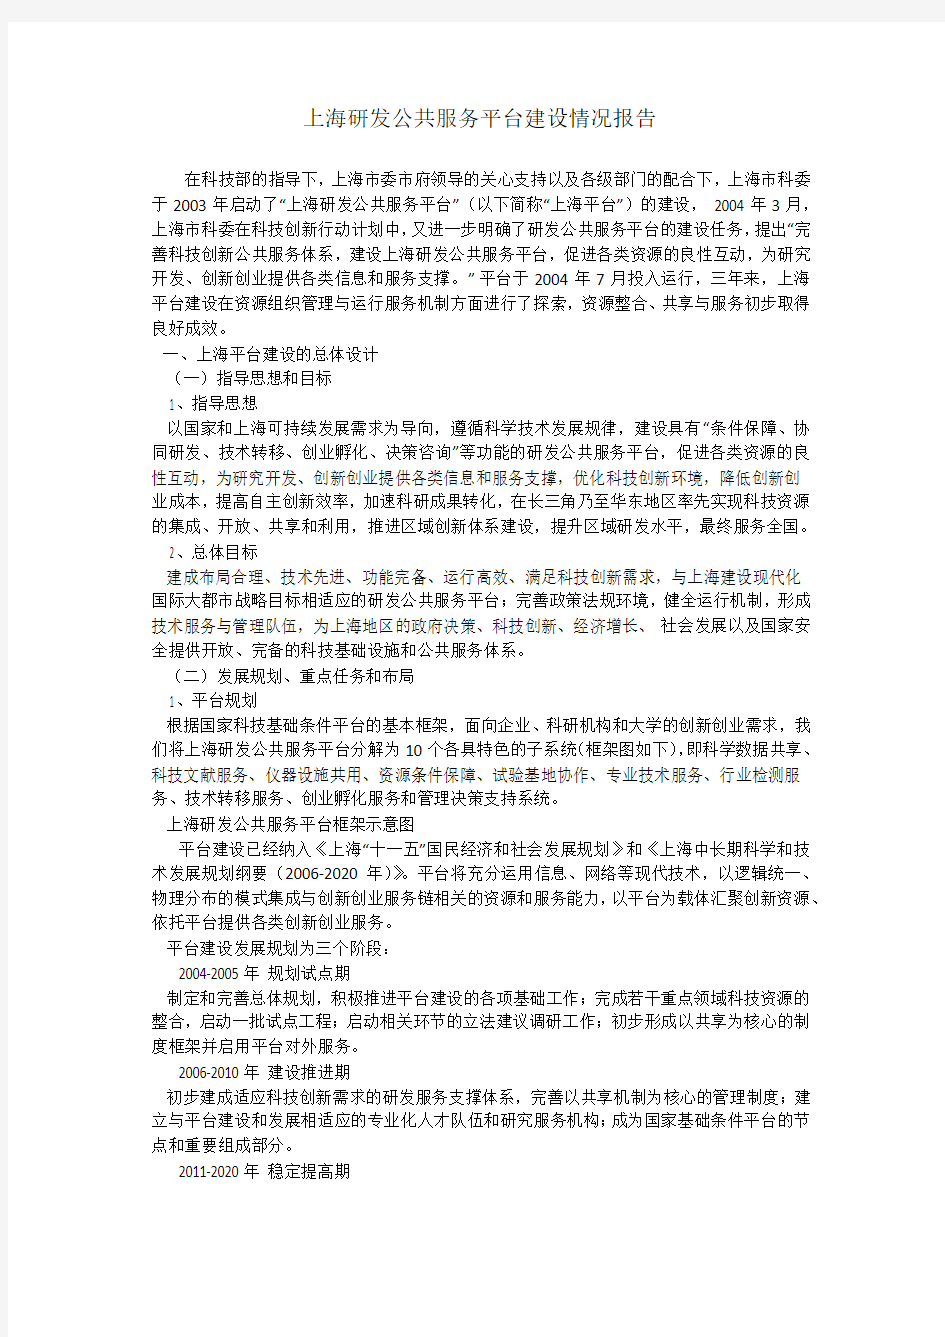 上海研发公共服务平台建设情况报告